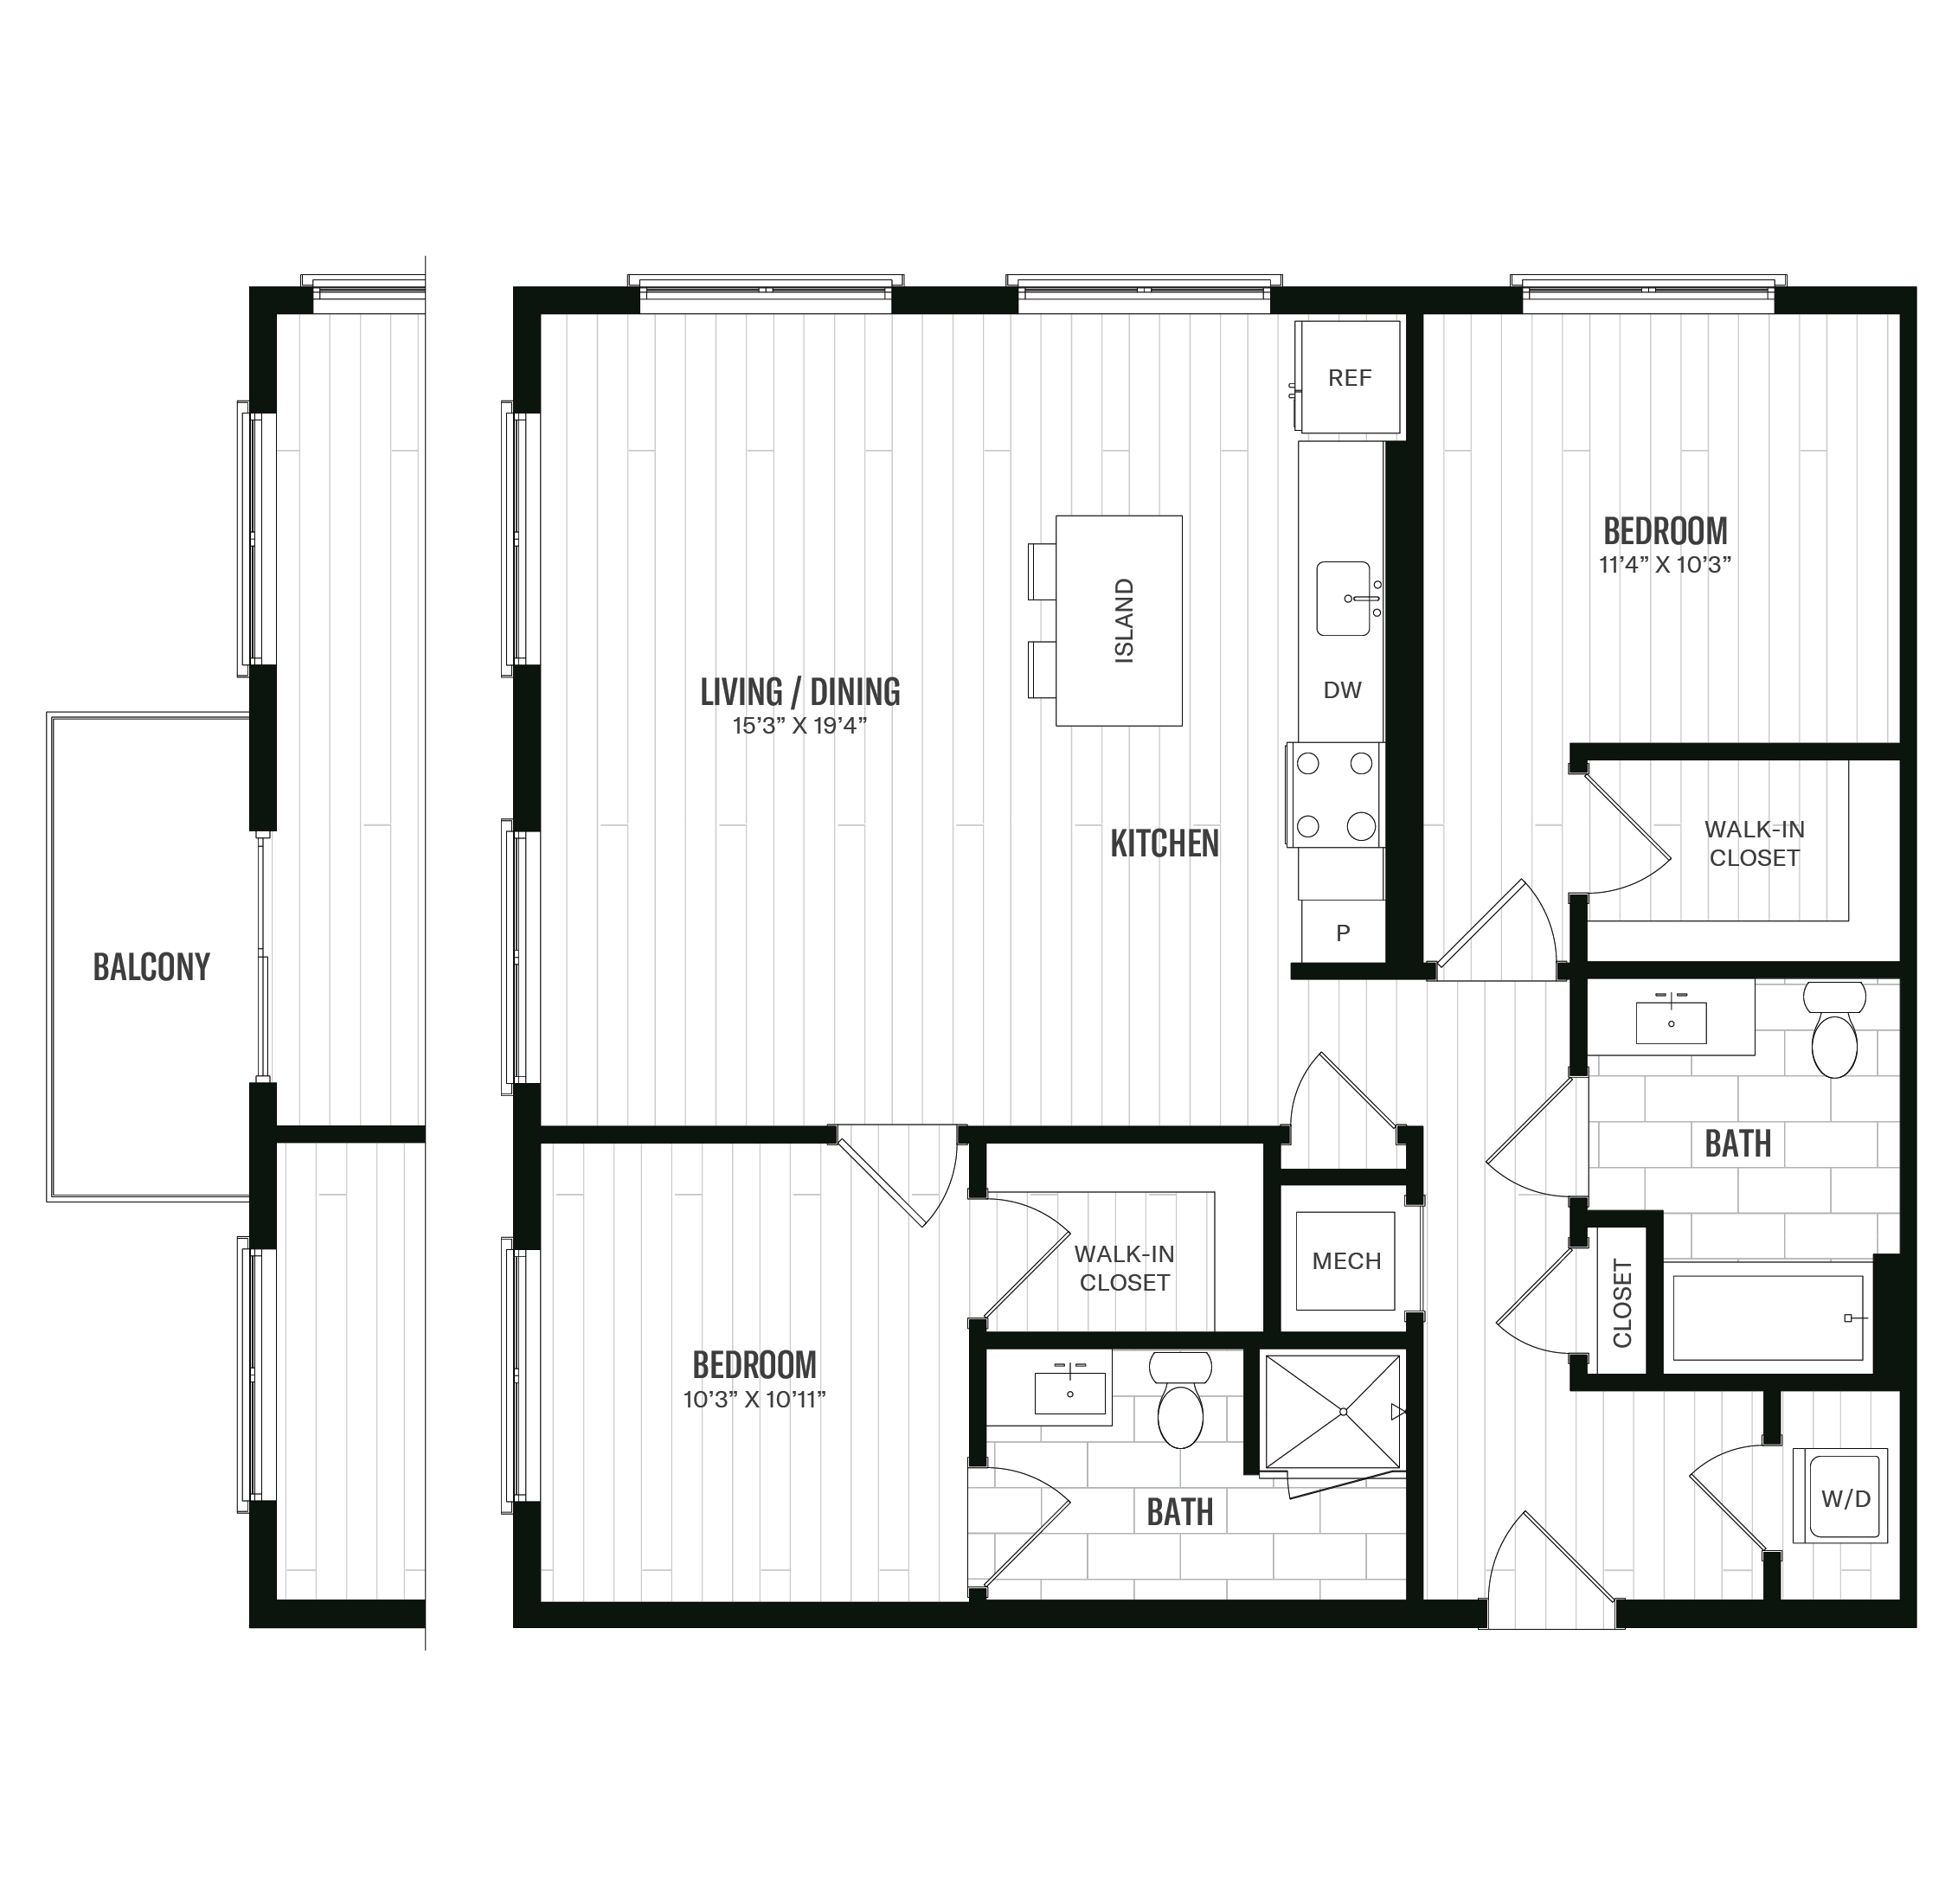 Floorplan image of unit 663